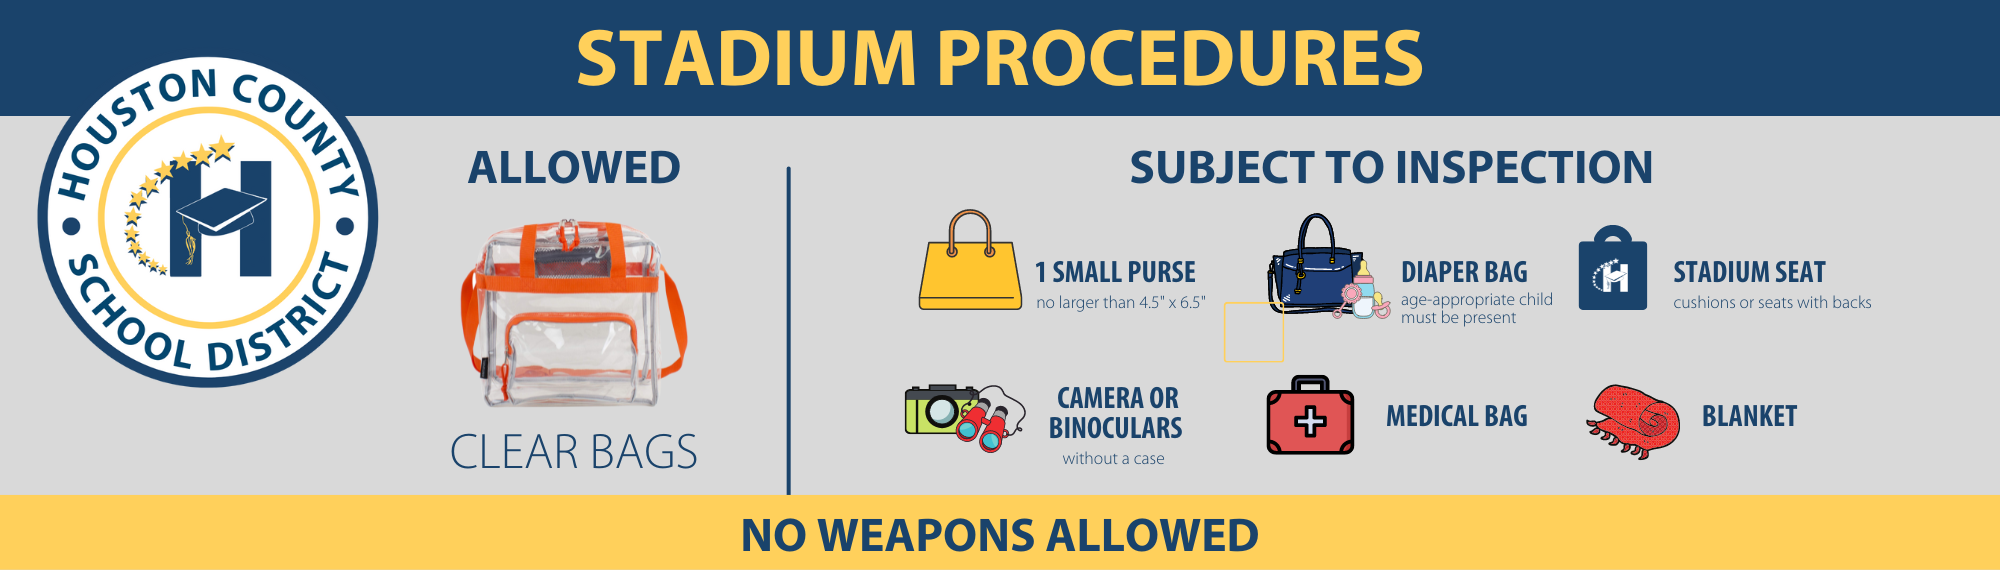 Stadium Procedures 23-24